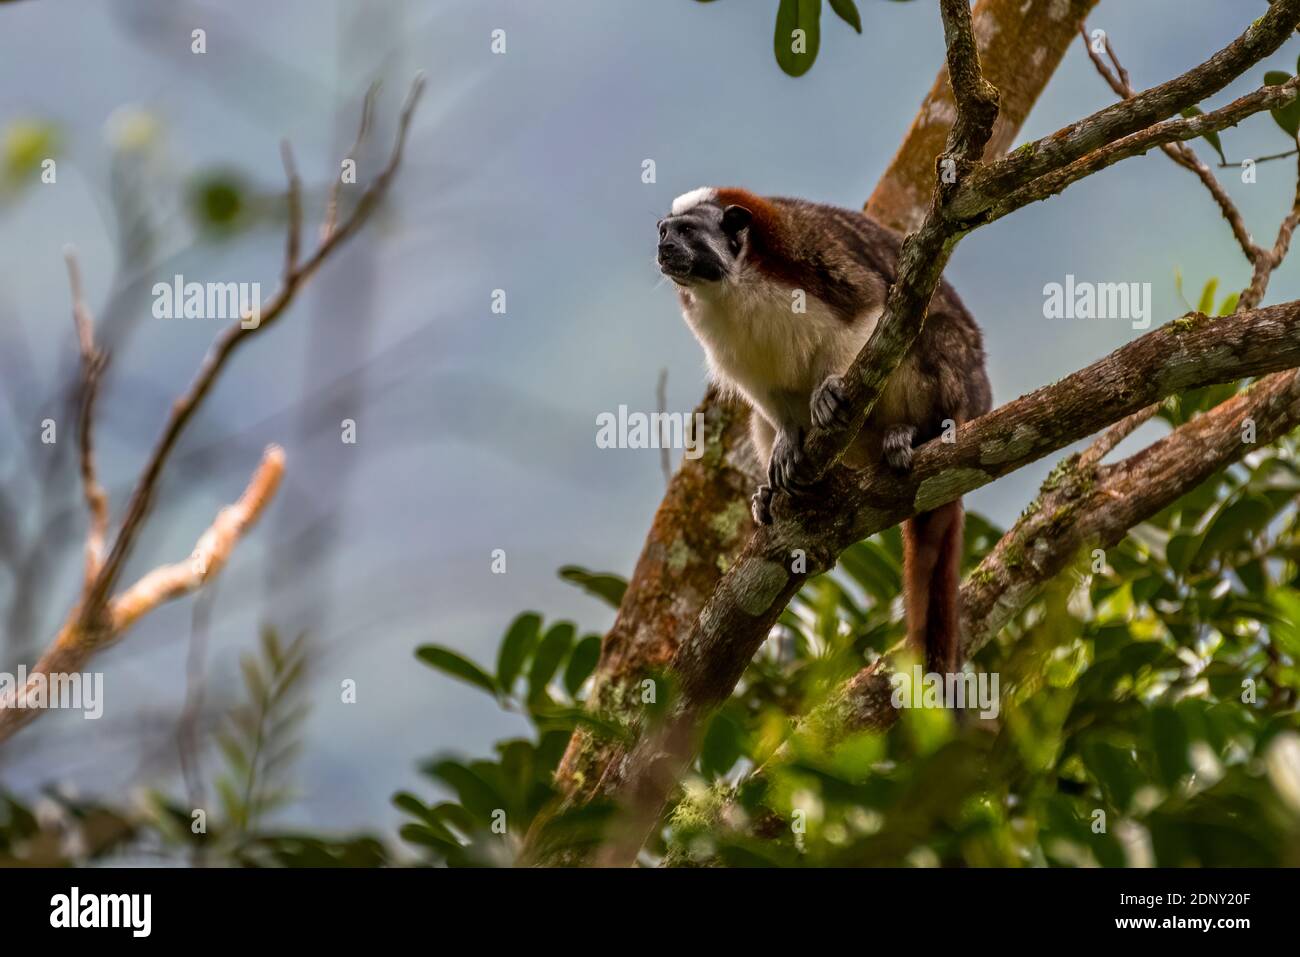 Immagine della scimmia tamarina di Geoffroy presa nella foresta pluviale di Panama Foto Stock